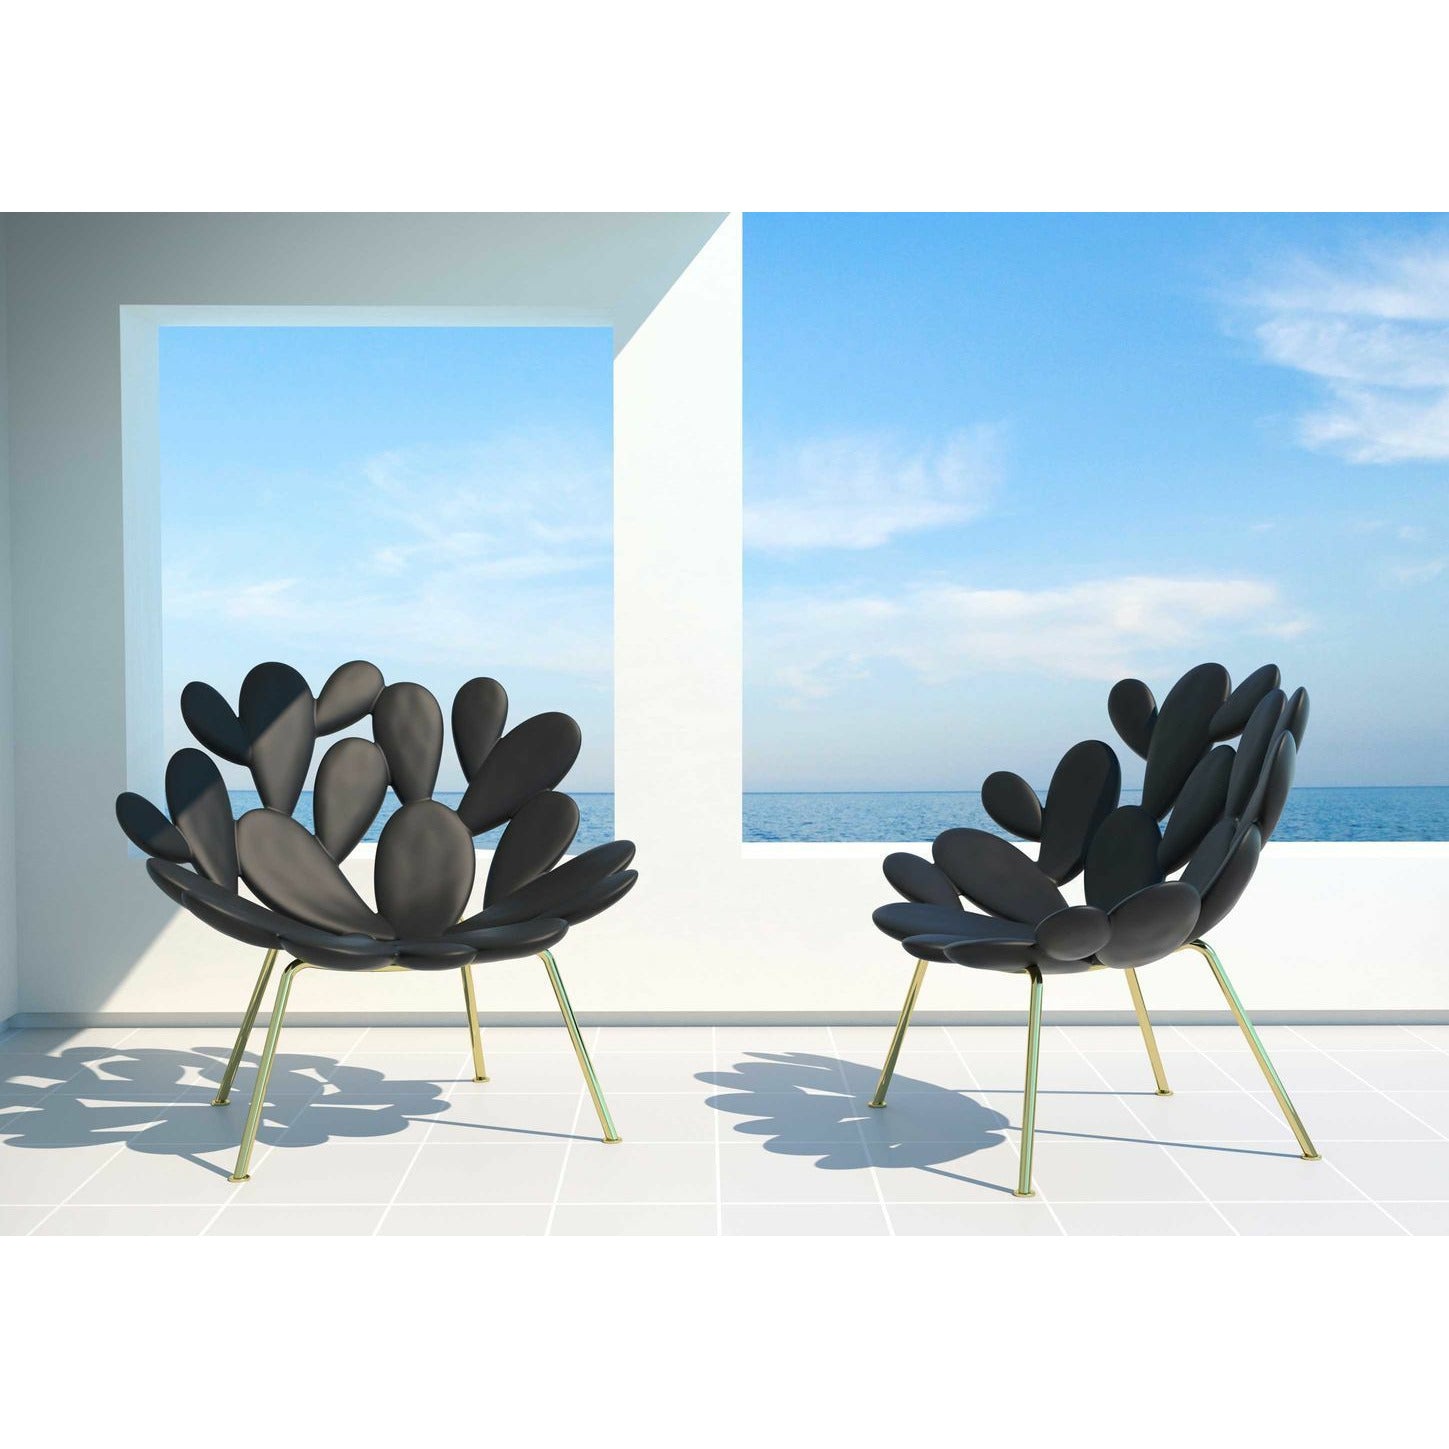 Qeeboo Filicudi -fauteuil door Marcantonio, zwart/messing